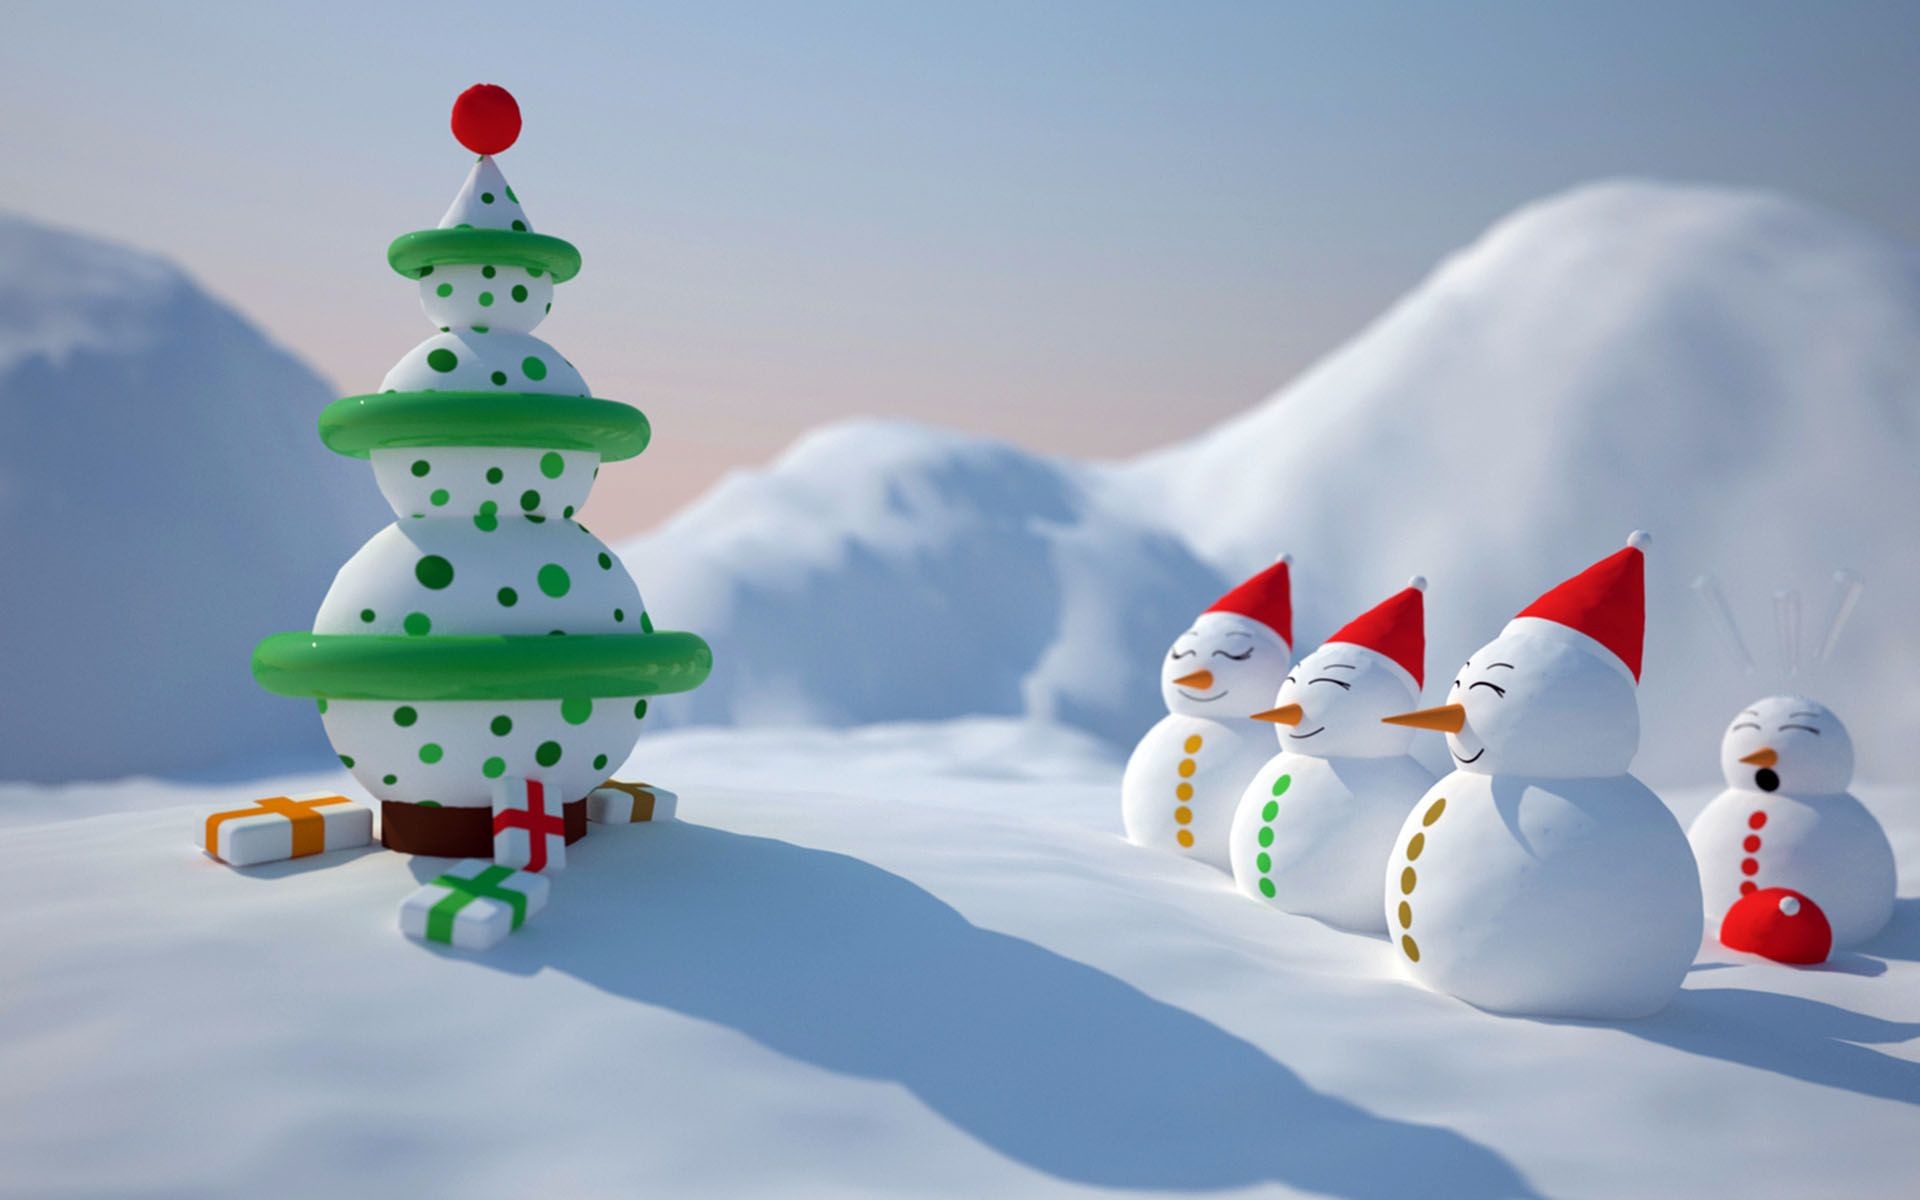 1920x1200 ÐÐ¾Ð²Ð¾Ð³Ð¾Ð´Ð½Ð¸Ðµ ÐÐ°ÑÑÐ¸Ð½ÐºÐ¸, Ð¾Ð±Ð¾Ð¸, Ð·Ð°ÑÑÐ°Ð²ÐºÐ¸ , ÑÐ¾ÑÐ¾ ÐºÑÐ°ÑÐ¸Ð²ÑÐµ free desktop. Cute Snowman  Wallpaper | cute christmas ...